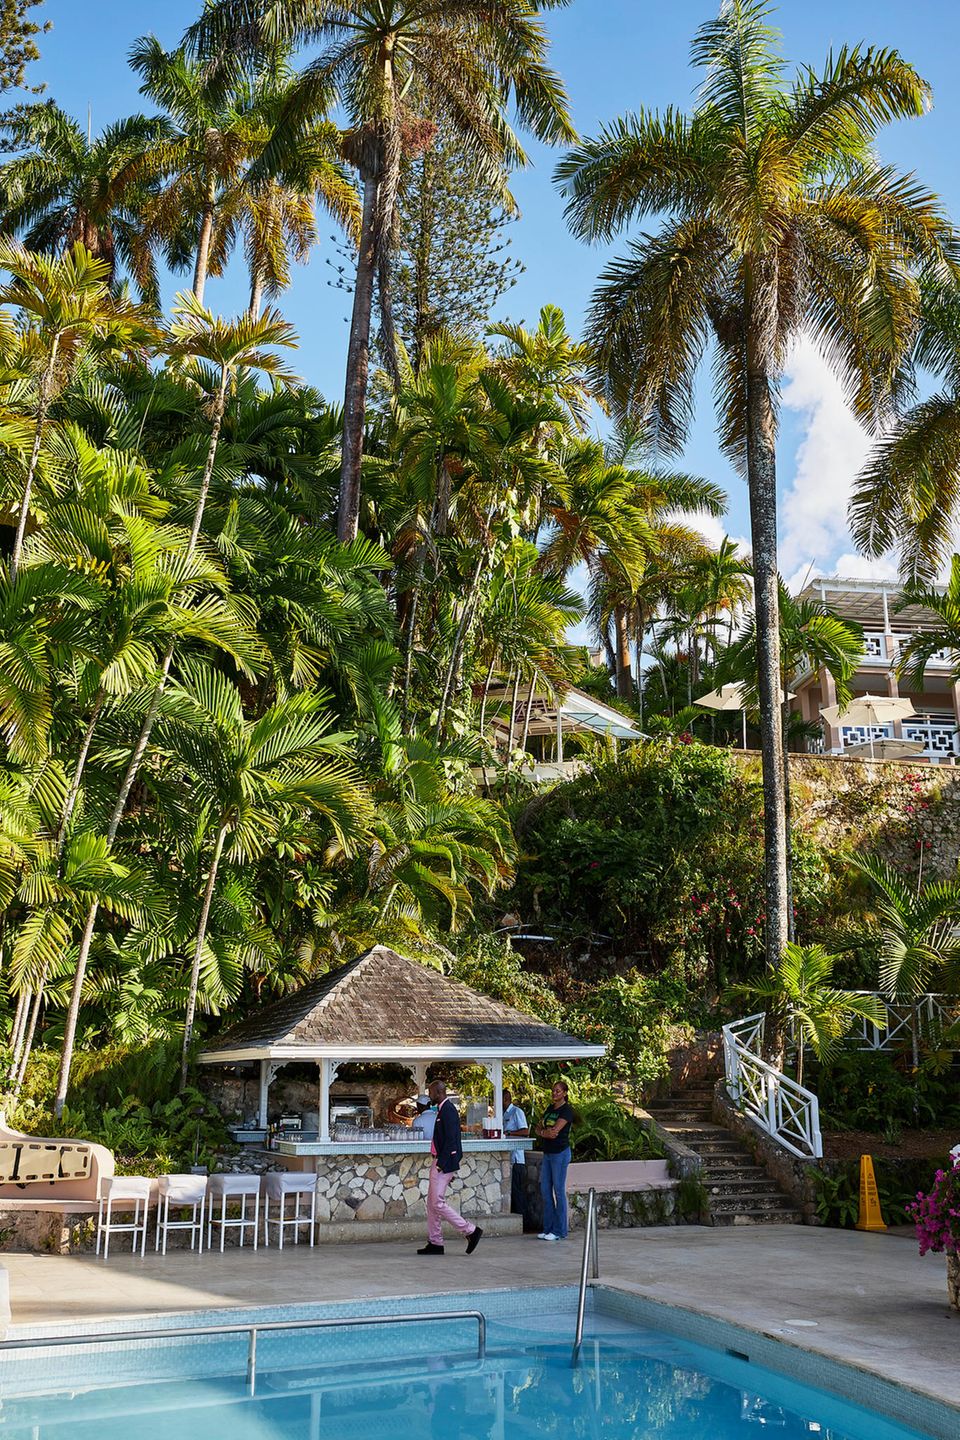 Erfrischender Pool im Tropengarten – im Fünf-Sterne-Resort "Couples Sans Souci" lässt sich wunderbar durchatmen